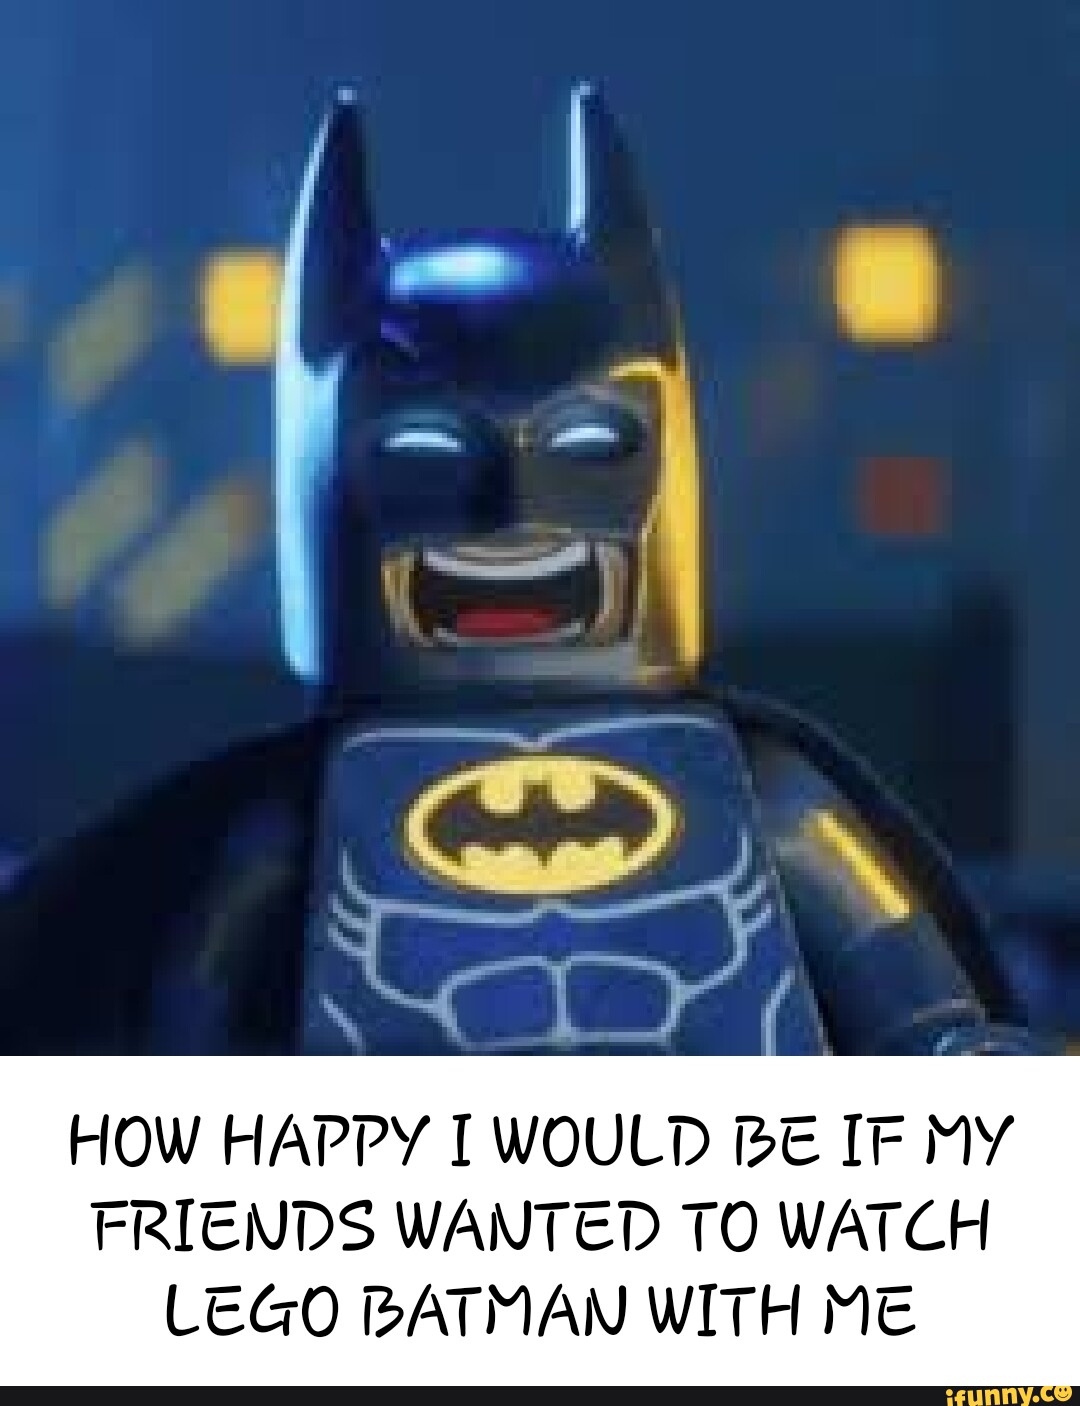 Lego batman gifs